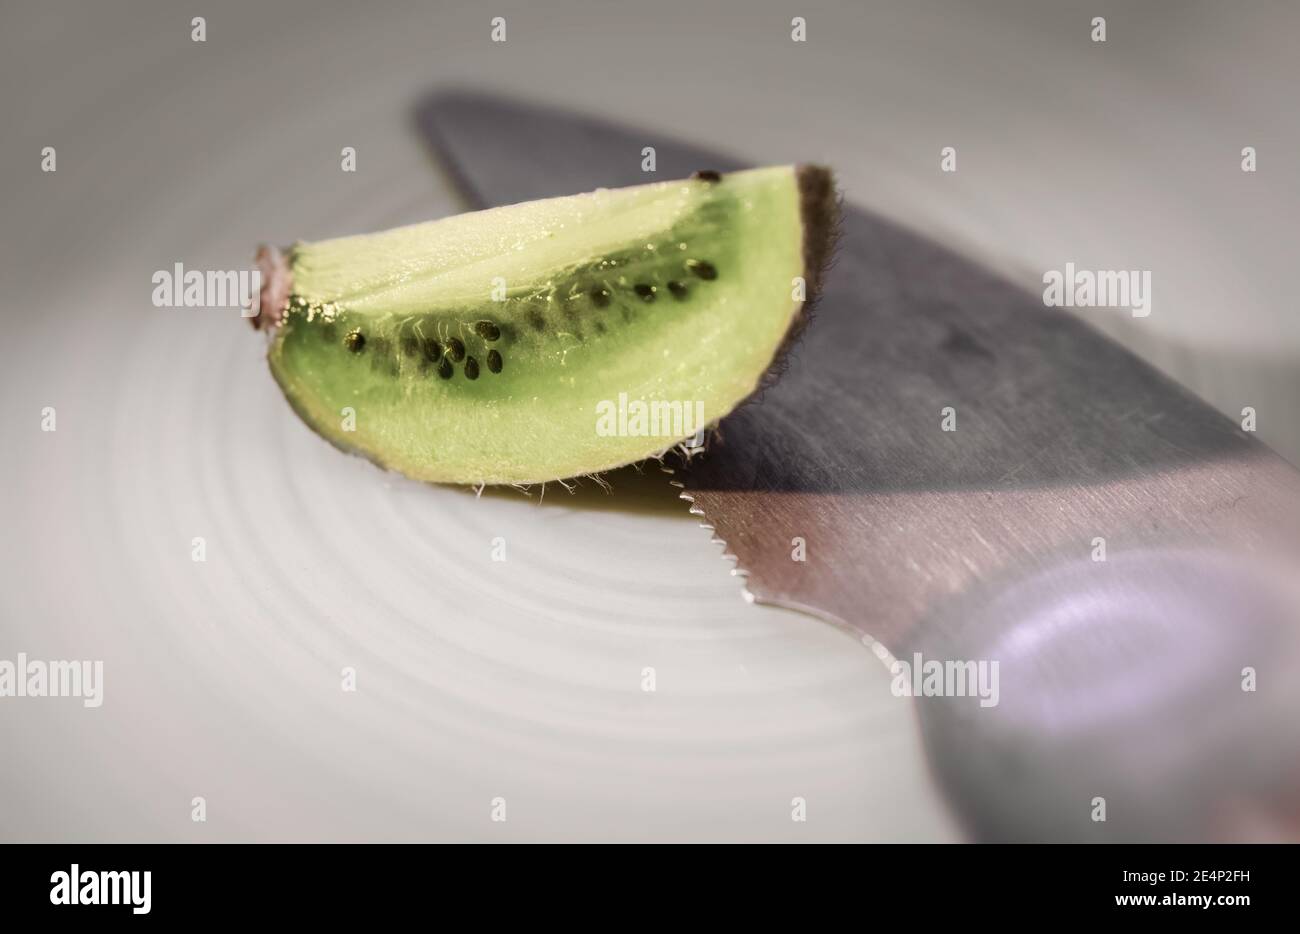 Ein Stück Kiwifruit auf einem Teller, ein Küchenwerkzeug, um die Früchte zu essen, gibt es auch. Stockfoto